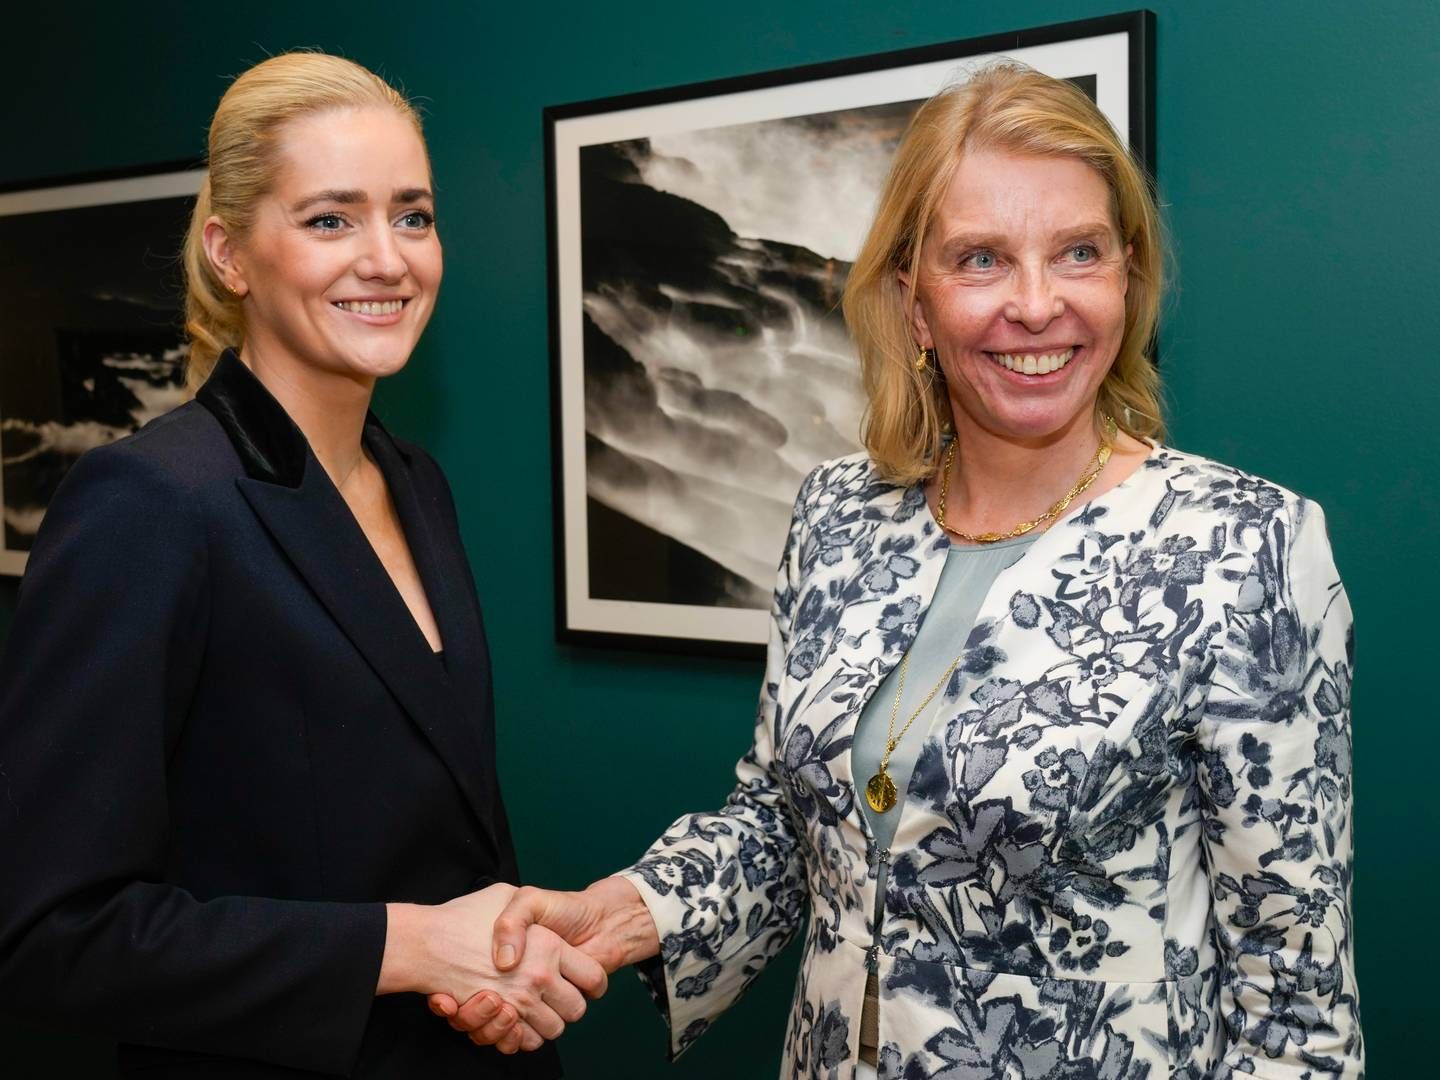 ENIGE: Advokatforeningens leder Siri Teigum (t.h.) og justis- og beredskapsminister Emilie Enger Mehl har signert avtalen. | Foto: Terje Bendiksby / NTB